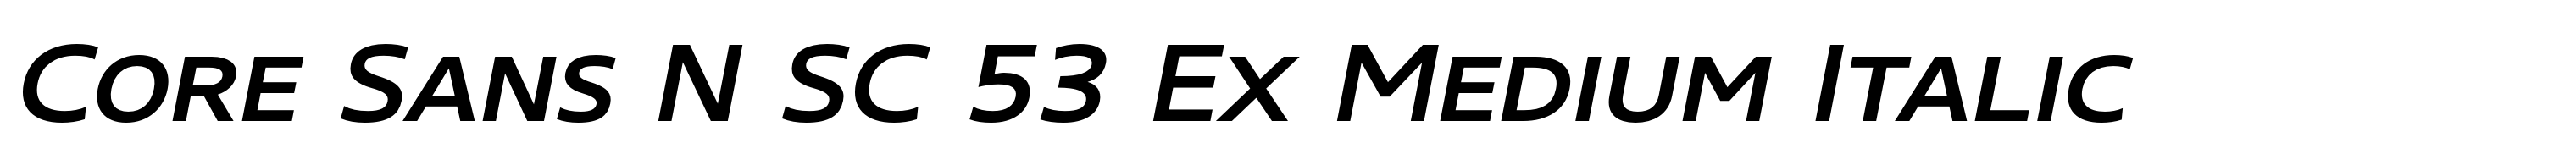 Core Sans N SC 53 Ex Medium Italic